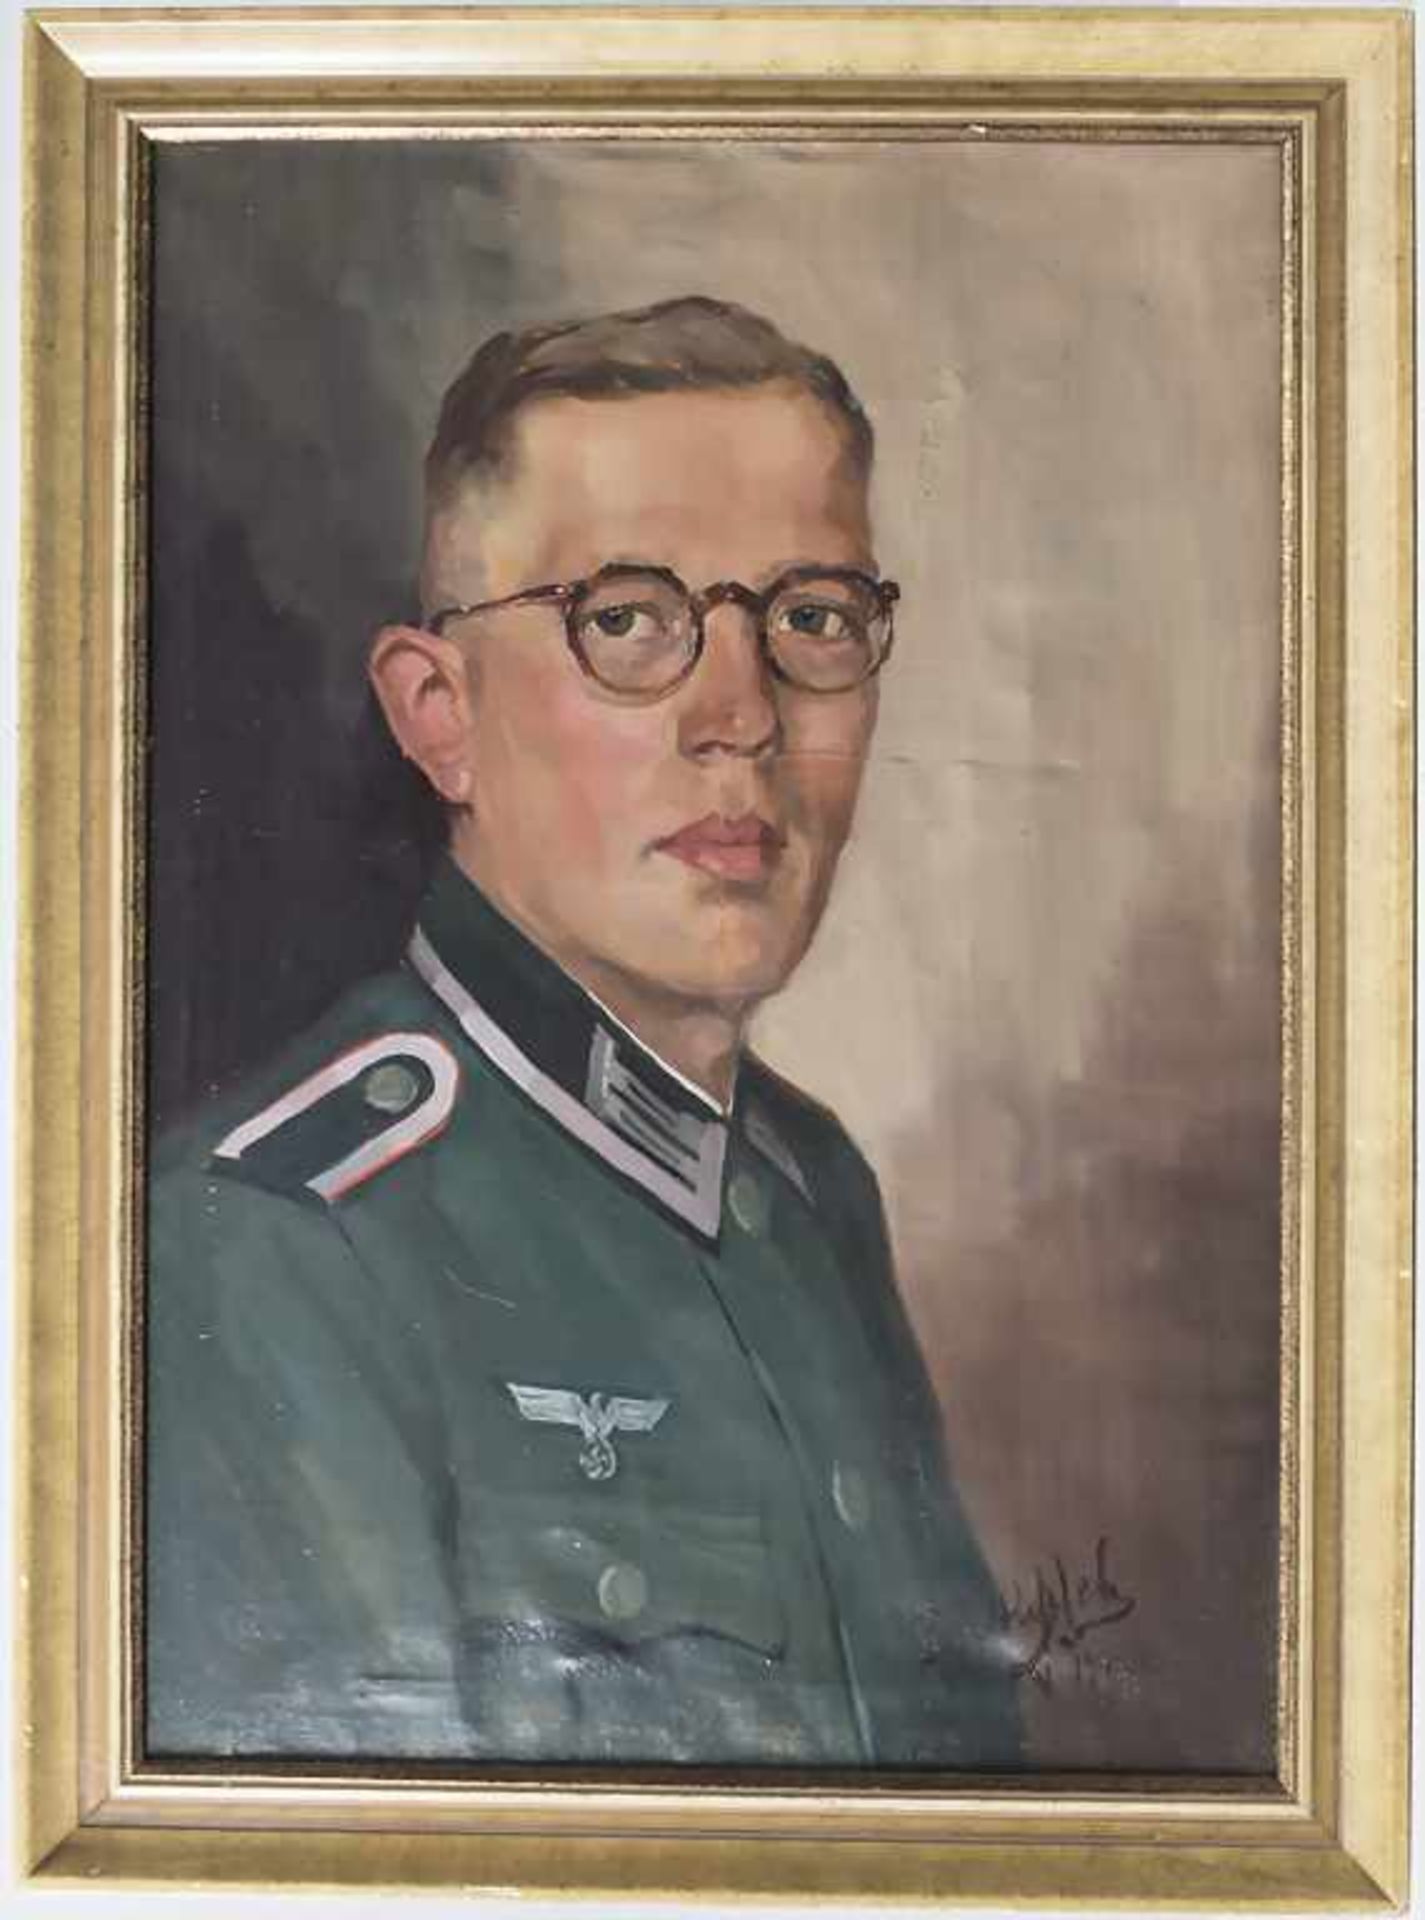 Künstler der 1930/40er Jahre, 'Soldat des 3. Reiches' / 'Soldier of the Third Reich' - Image 2 of 7